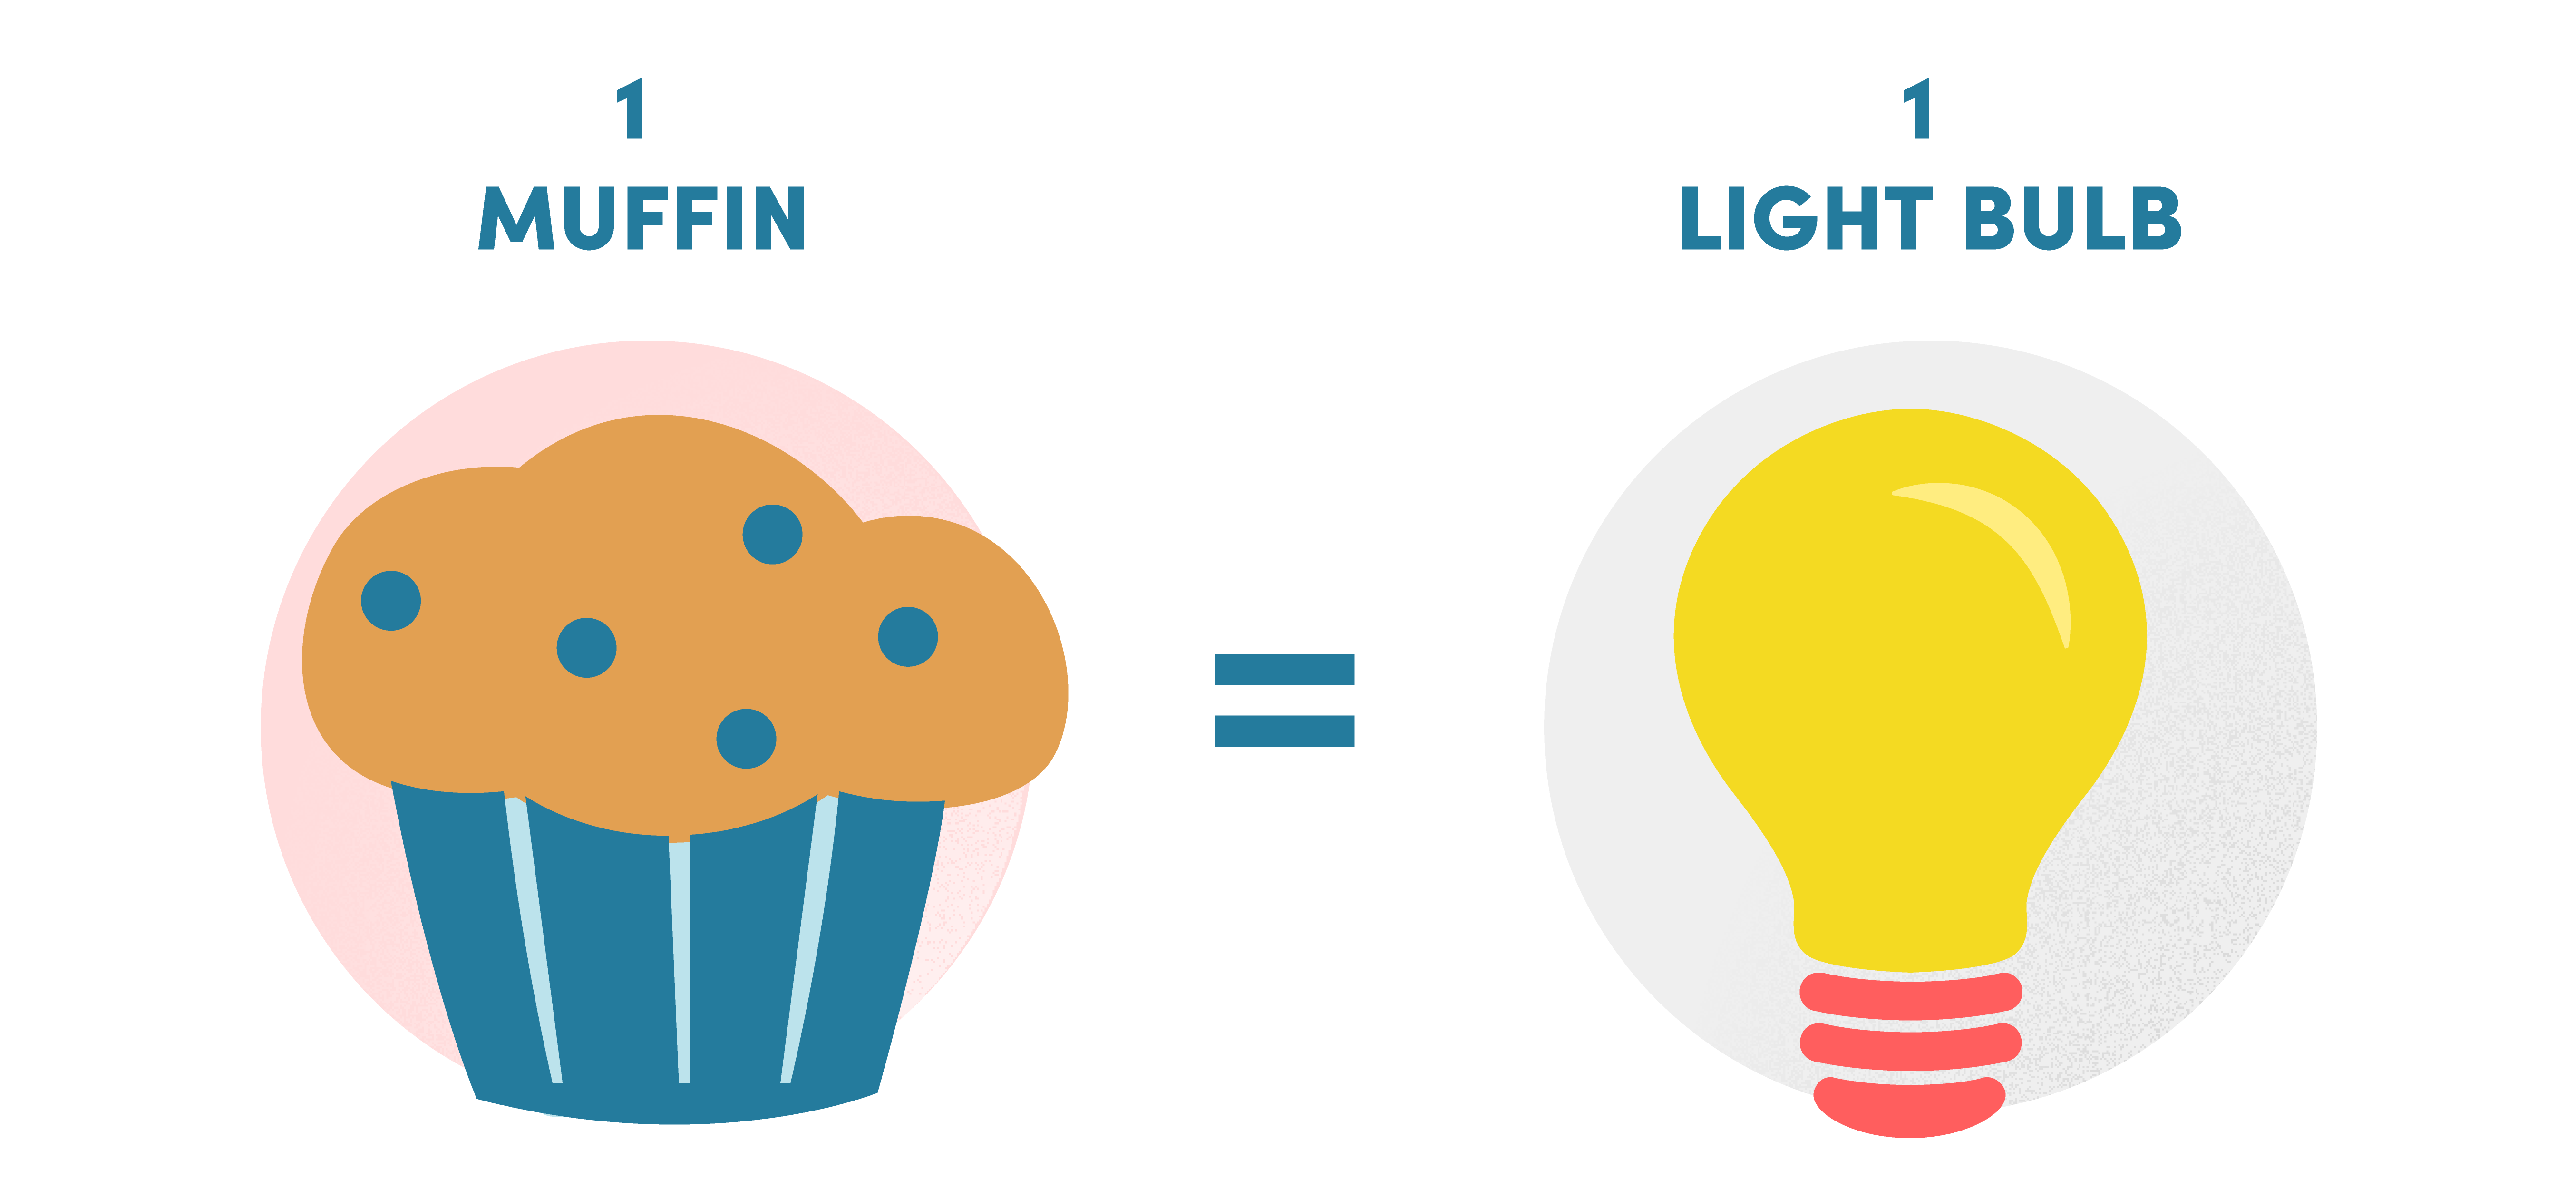 1 Muffin = A Light Bulb